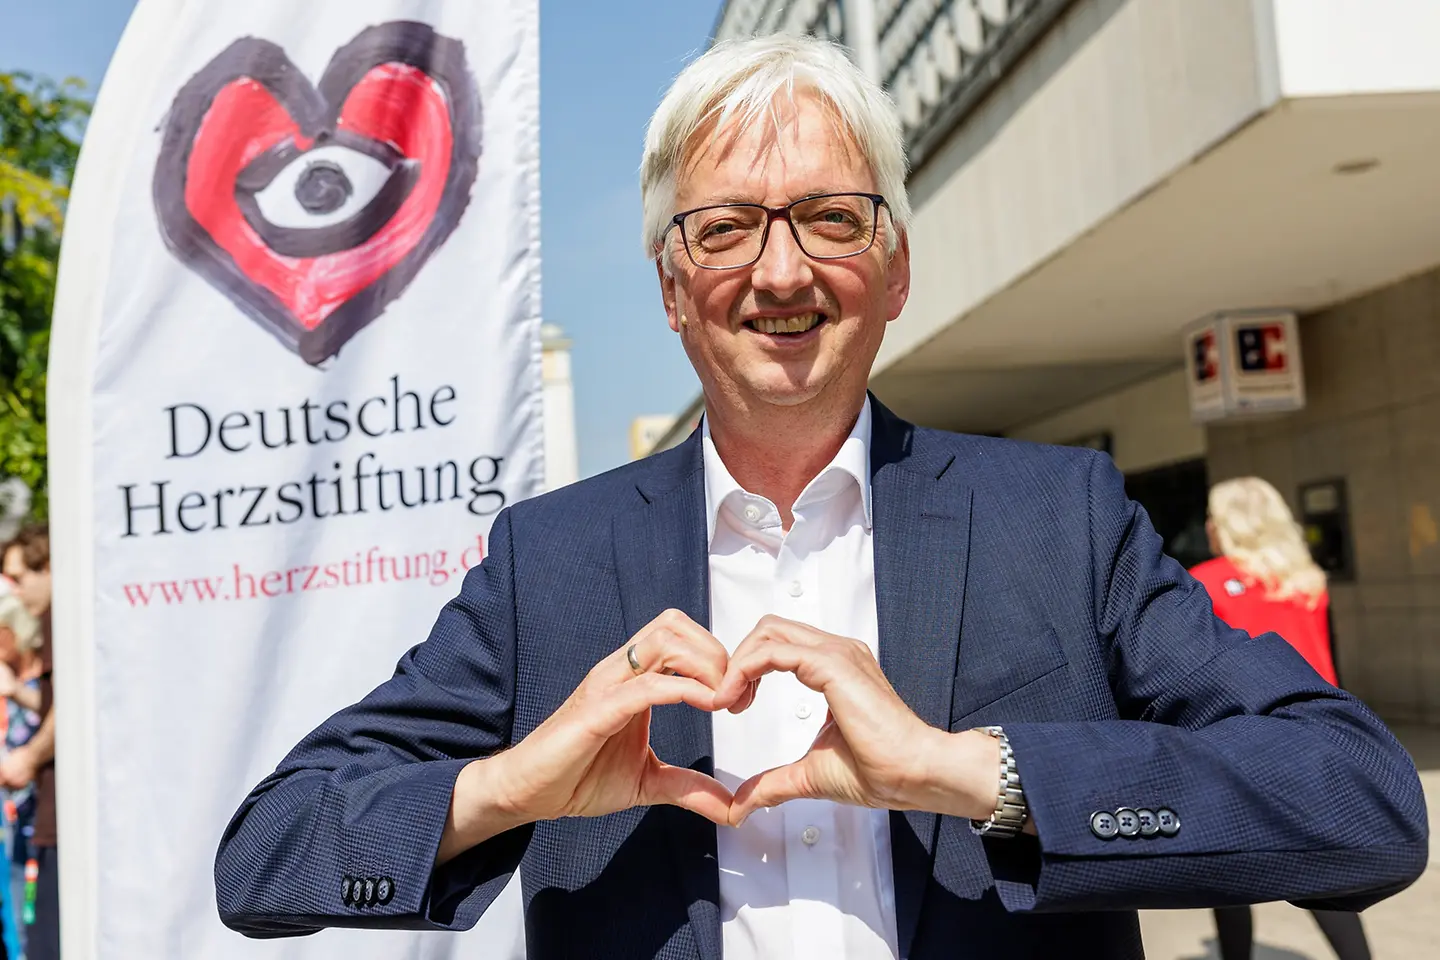 Staatssekretär Wolfgang Beck formt mit seinen Händen ein Herz.